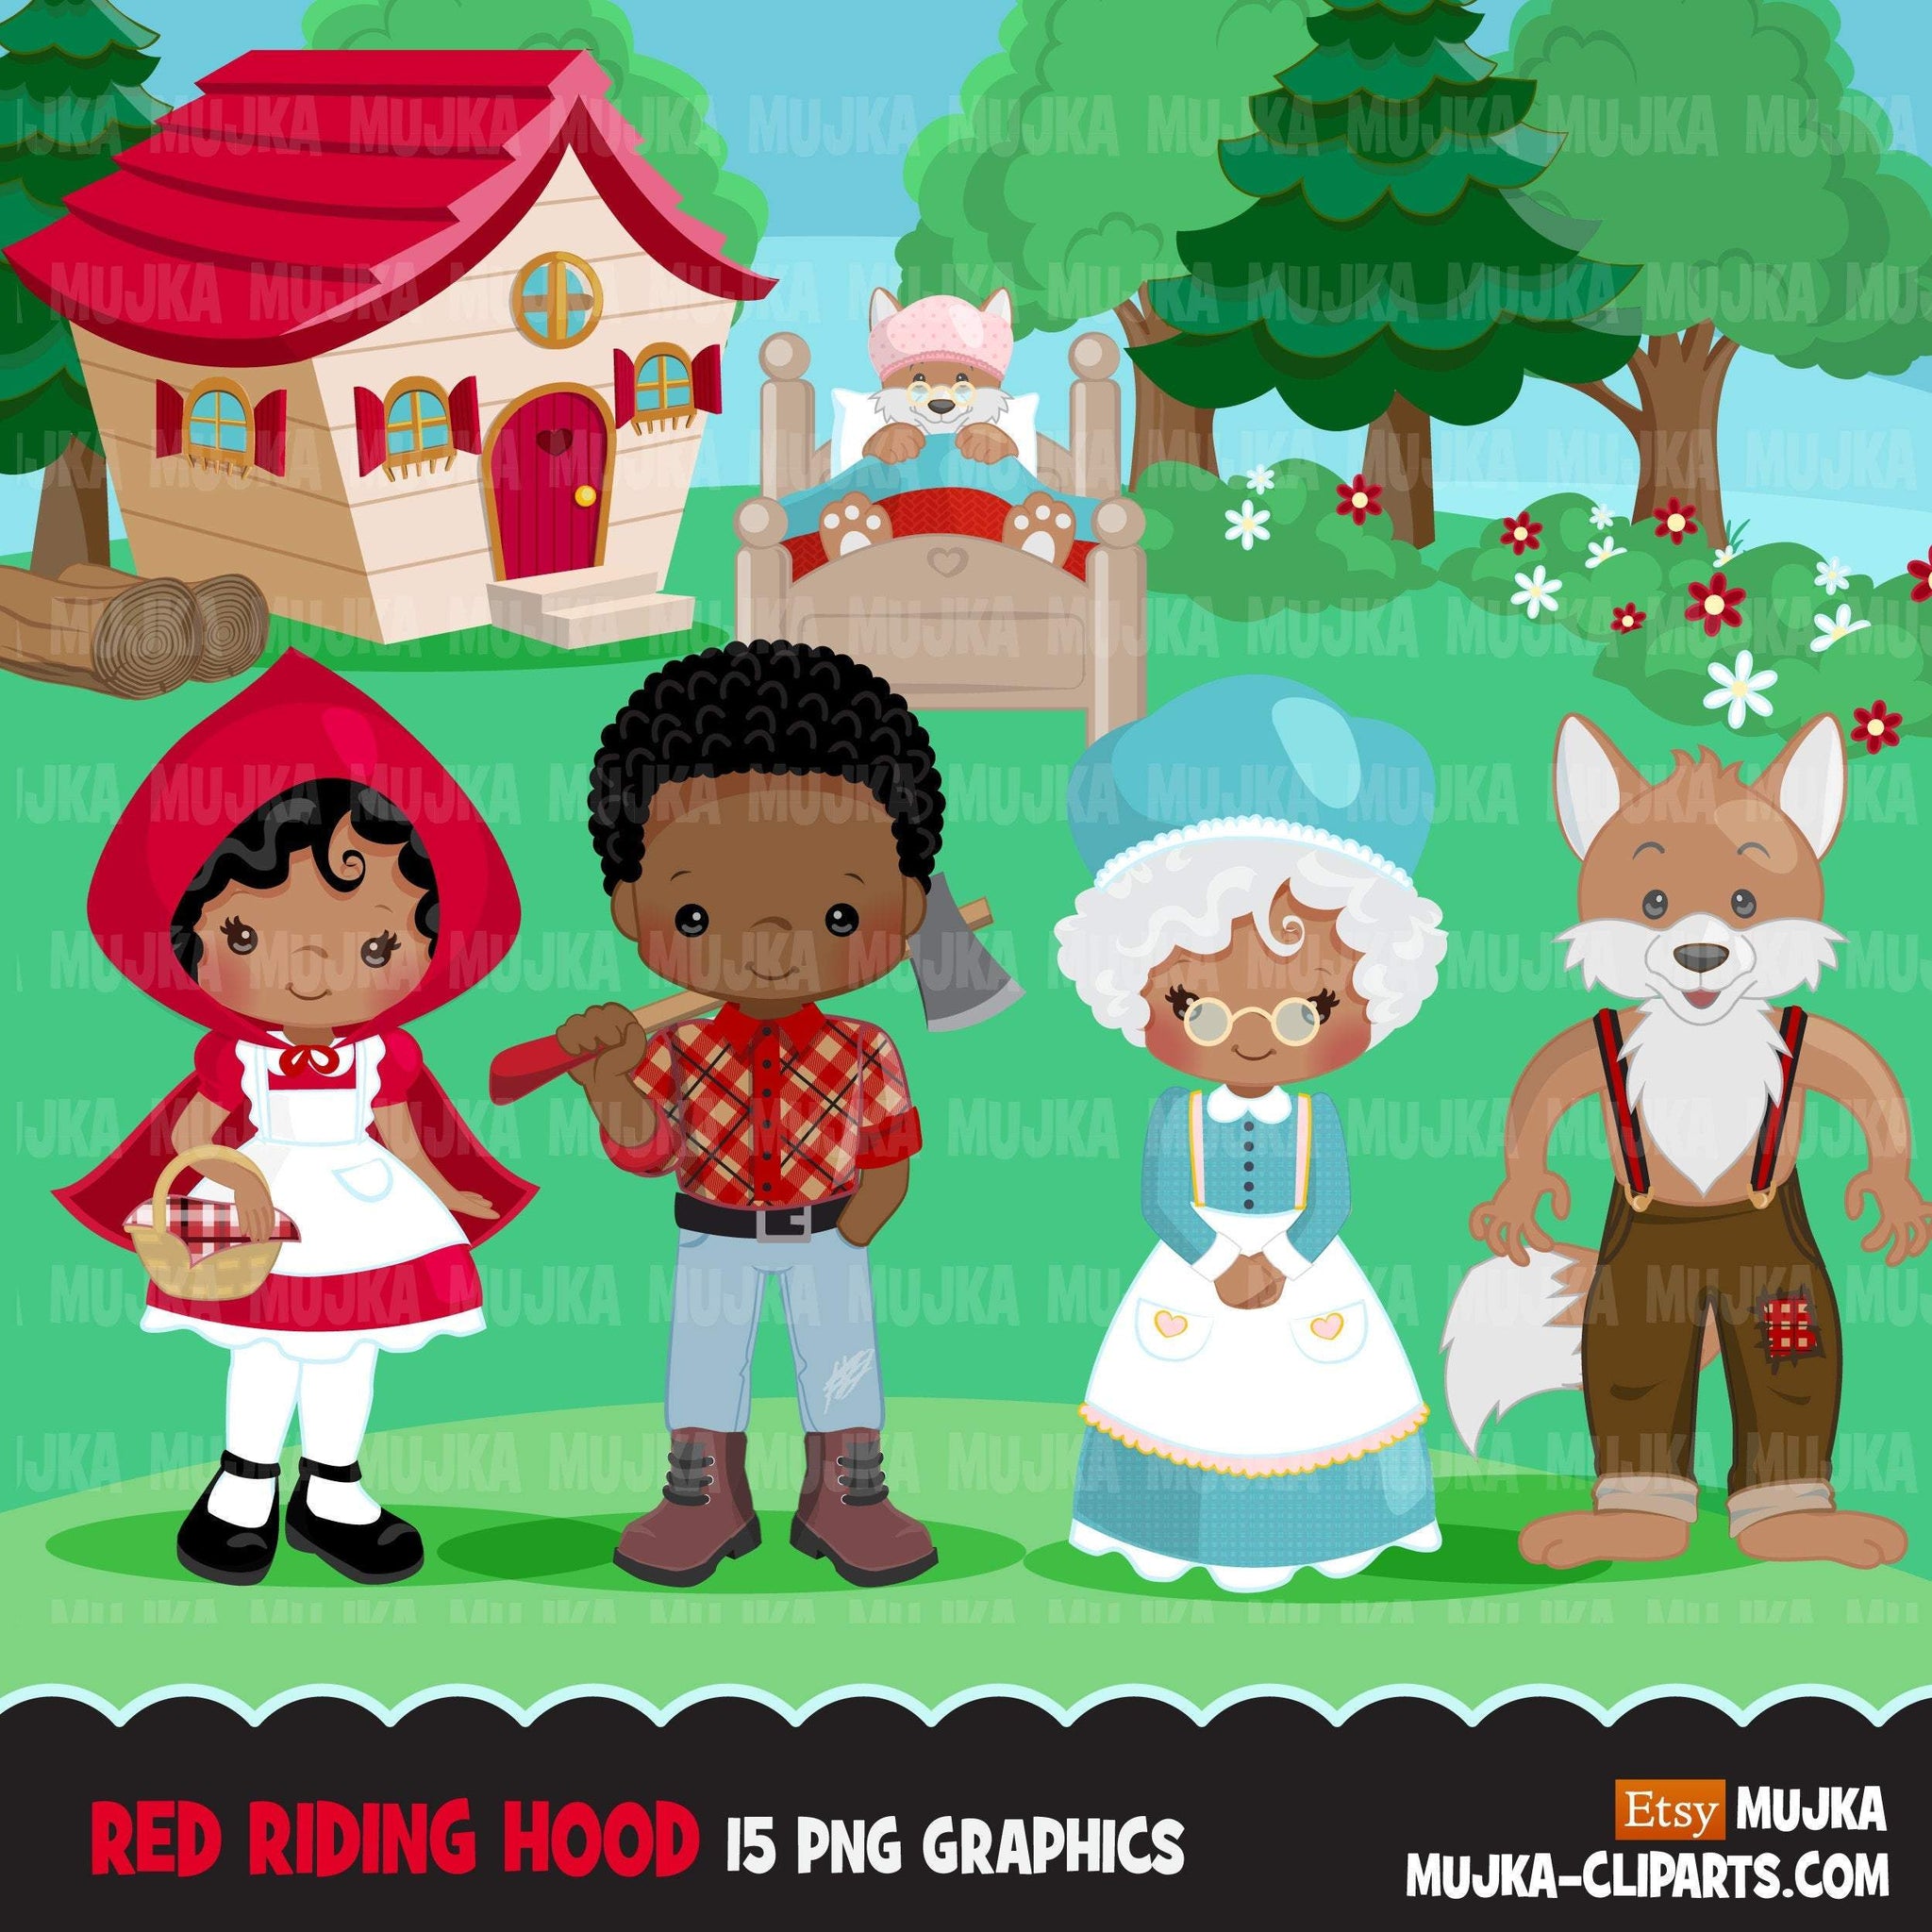 Clipart de Chapeuzinho Vermelho Afro preto, lobo fofo, floresta, gráficos de livro de histórias, ilustrações de conto de fadas de menino e menina de pele escura